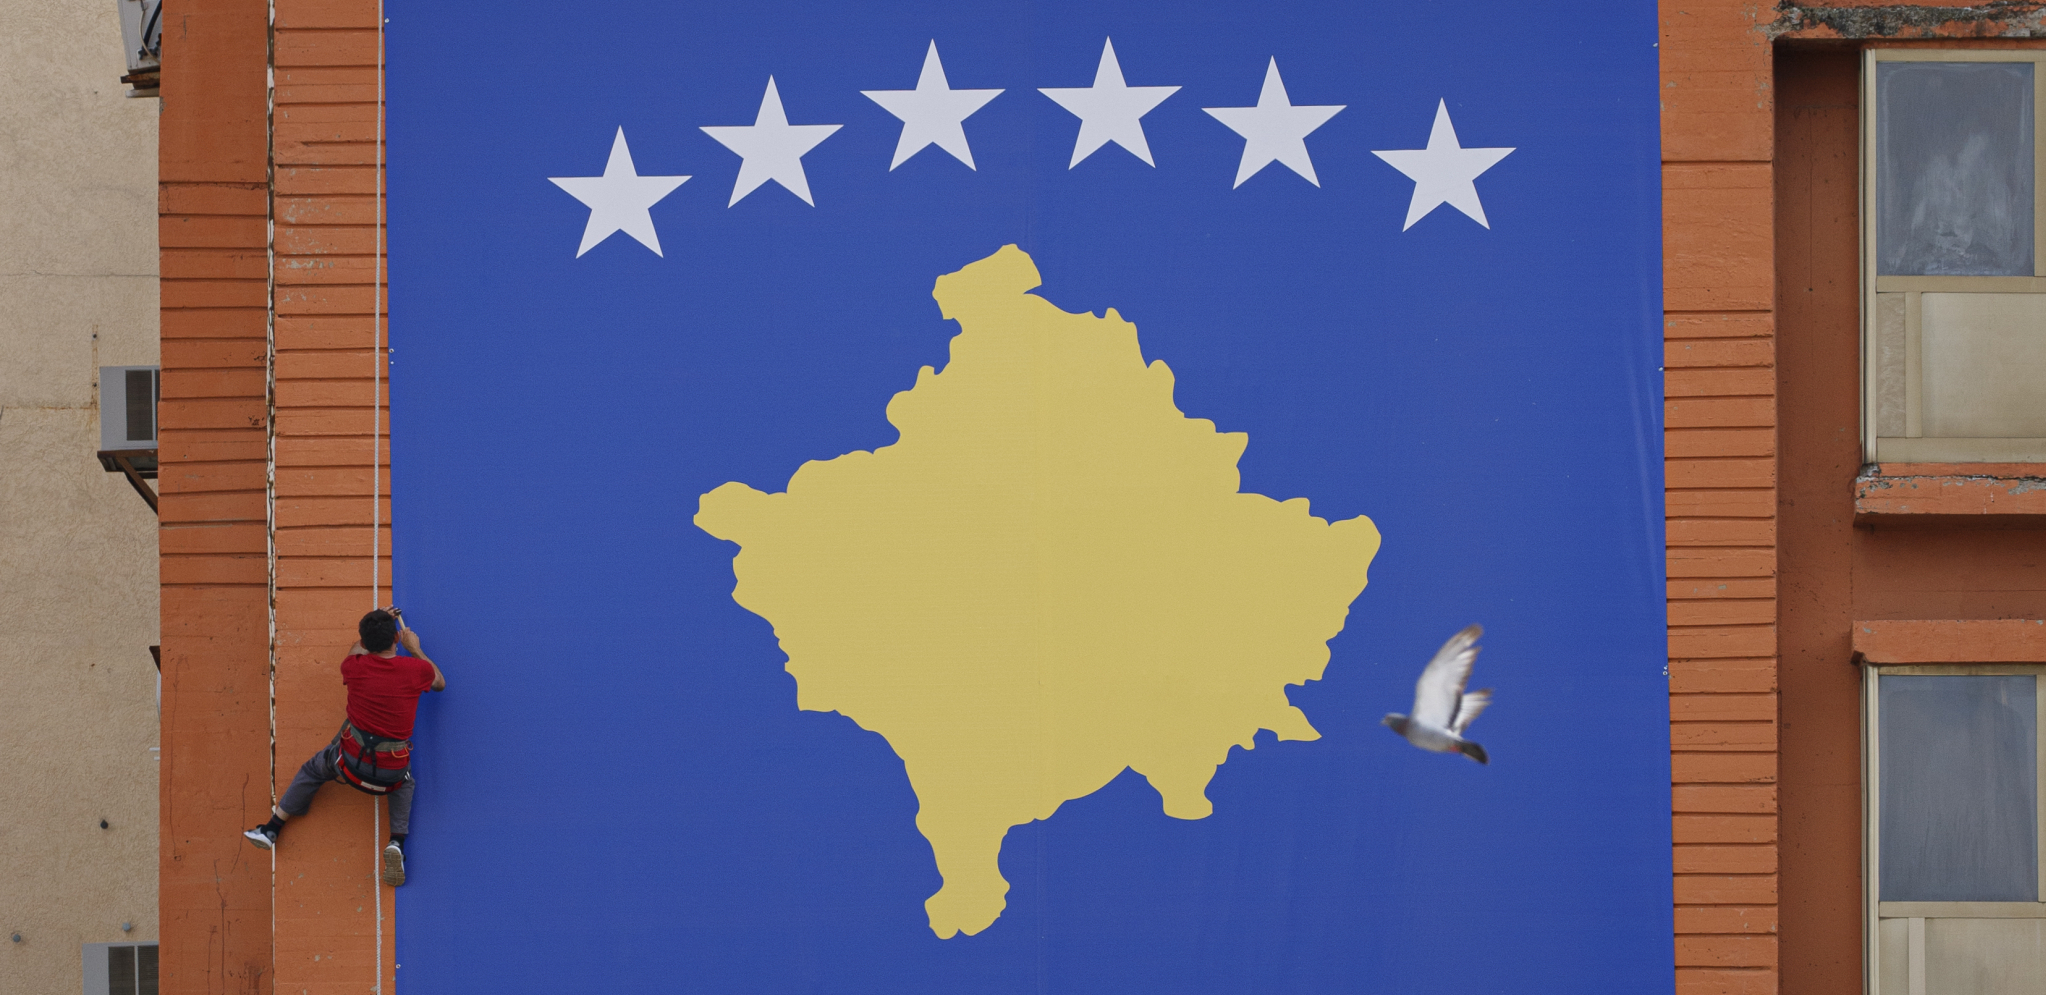 ZAVRŠEN SASTANAK SAVETA BEZBEDNOSTI U PRIŠTINI "Kosovske institucije ostaju privržene očuvanju reda"